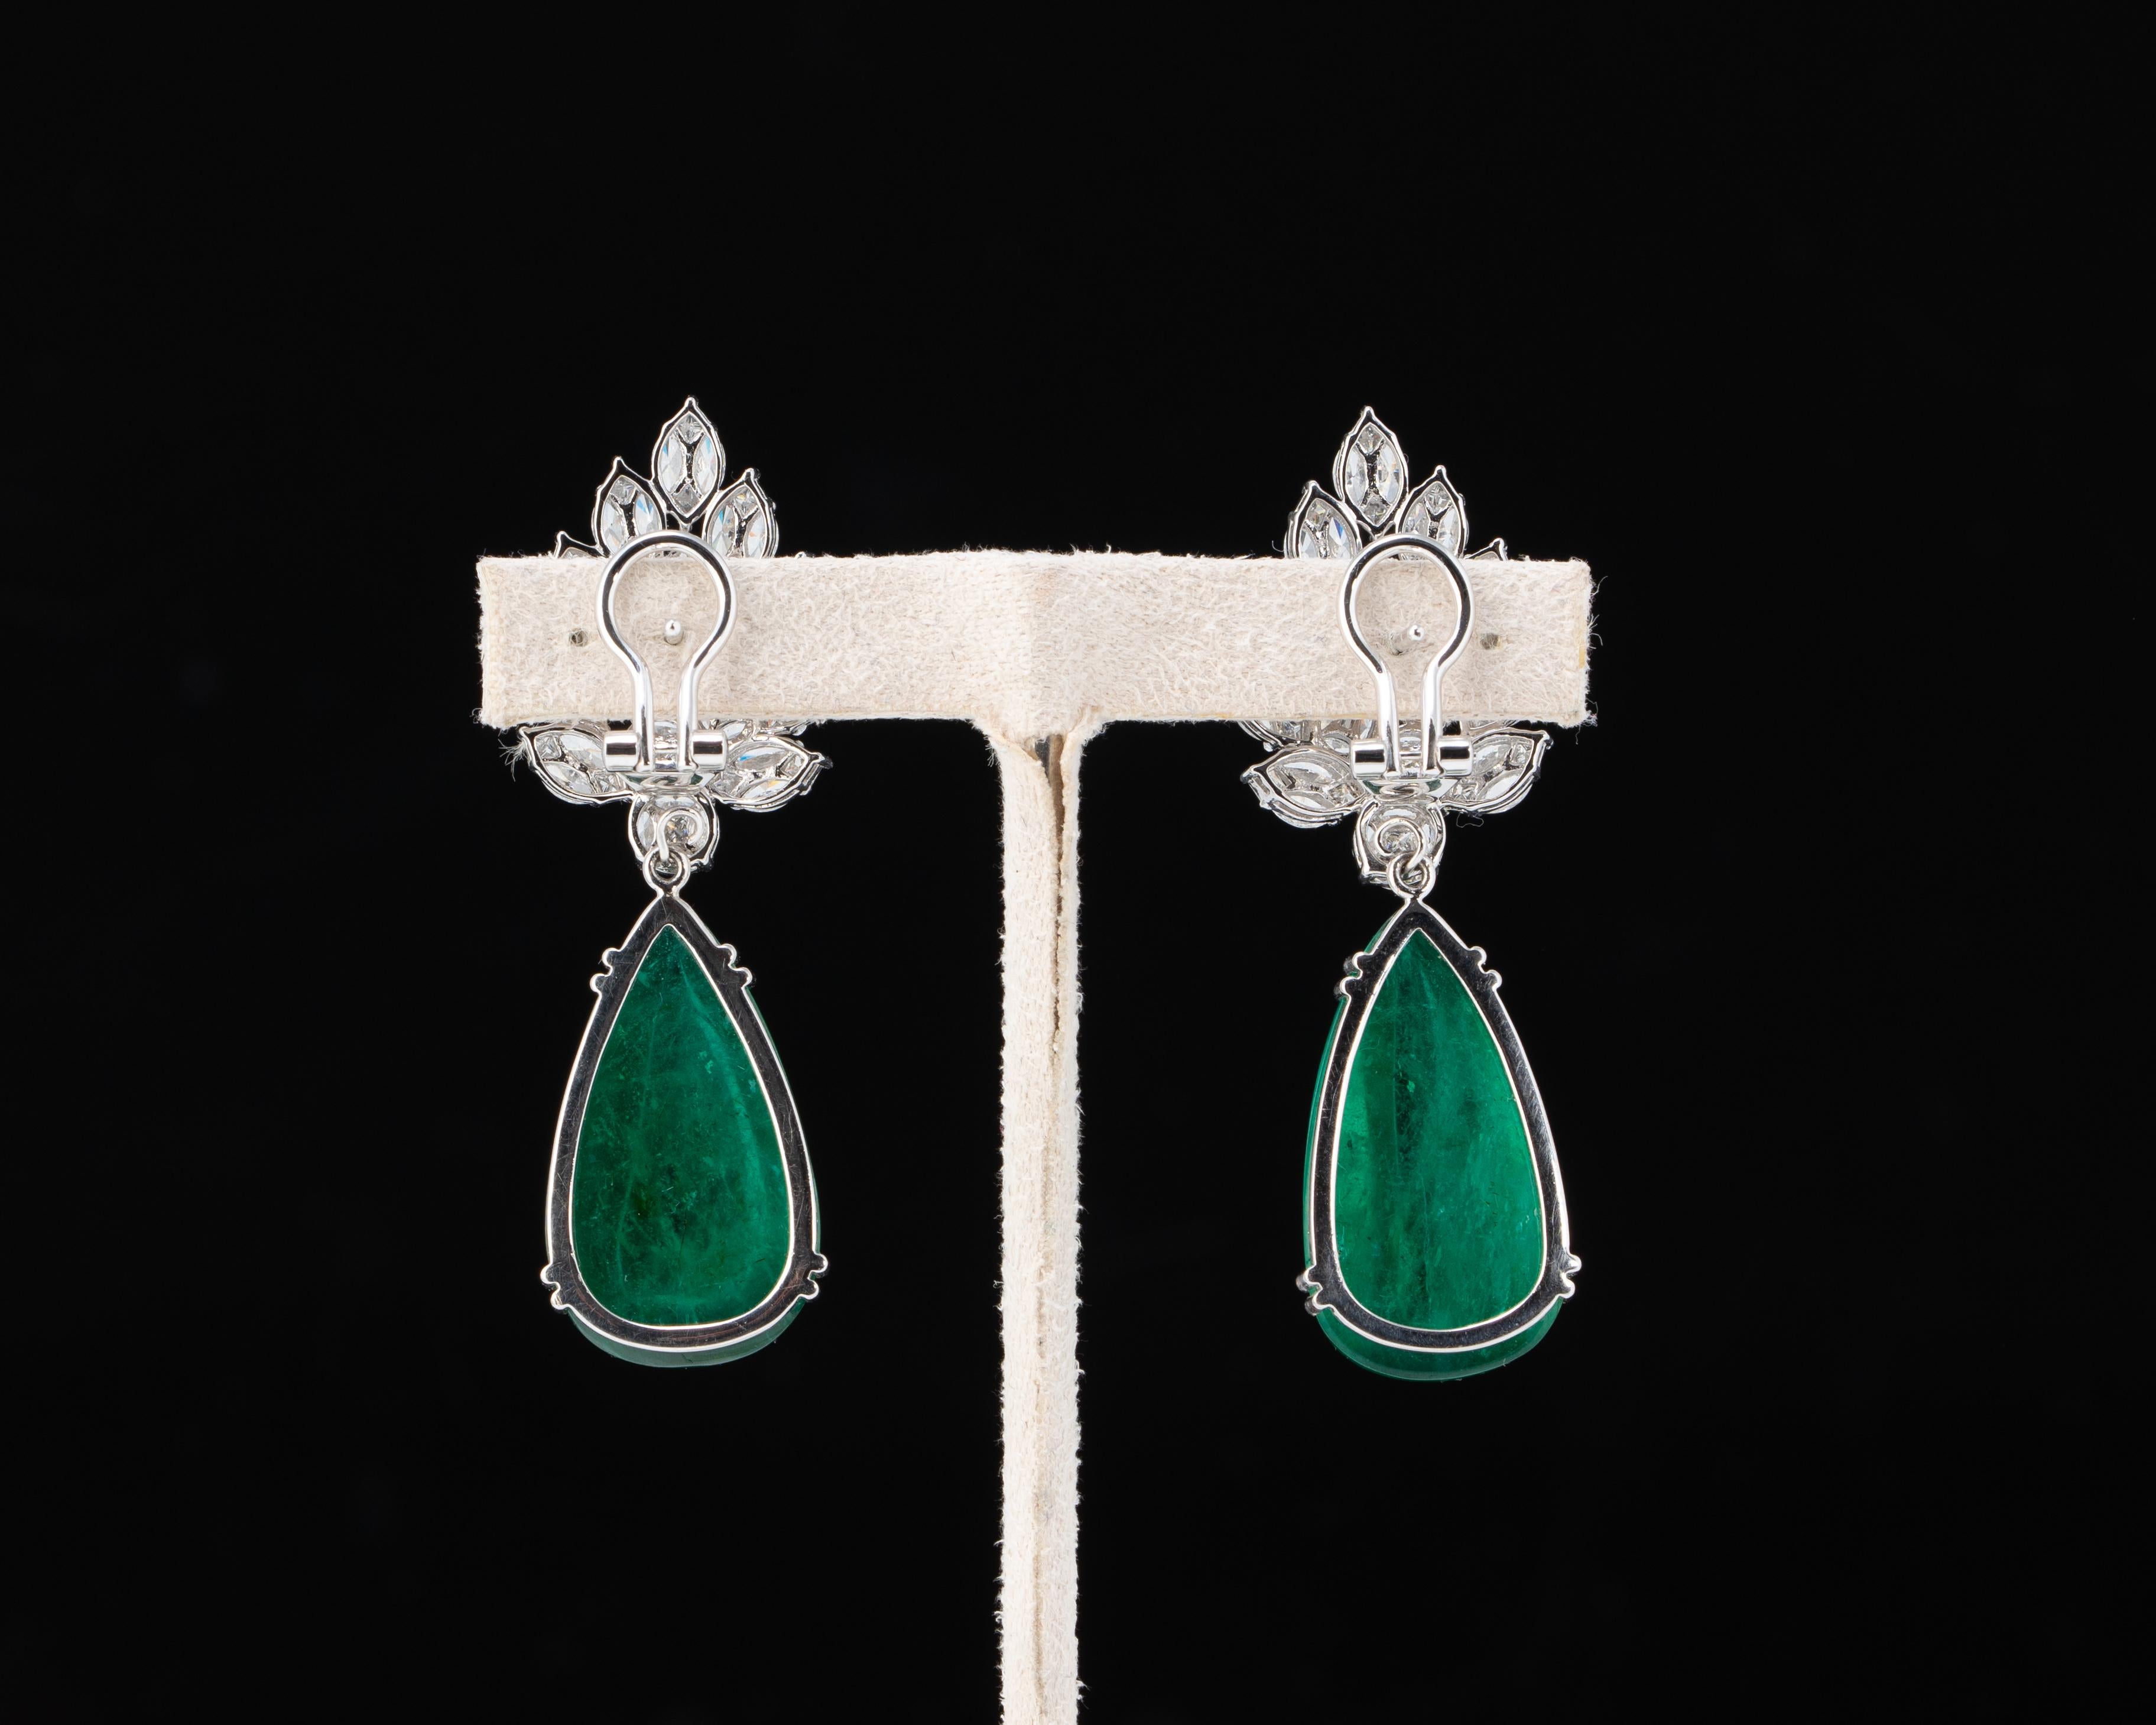 Setzen Sie ein Zeichen mit diesem exquisiten Paar Ohrringe: 44,32 Karat sambischer Smaragde in Birnenform hängen an einer wunderschönen Fassung aus Gold und weißen Diamanten in 18 Karat Weißgold. Die Smaragde sind sauber und transparent und weisen